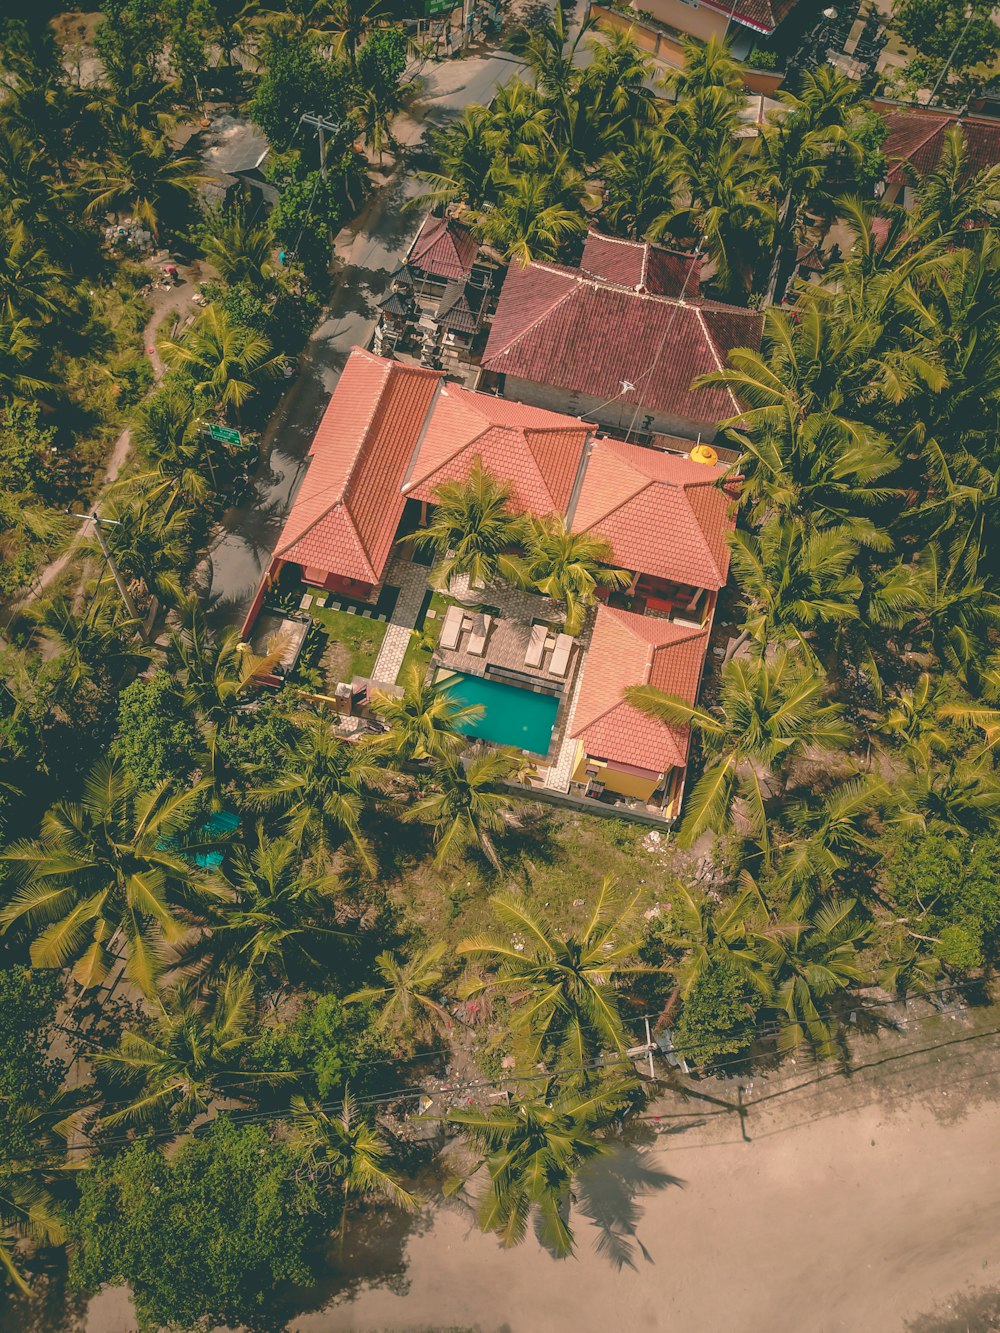 Luftaufnahme eines Betonhauses mit Schwimmbad